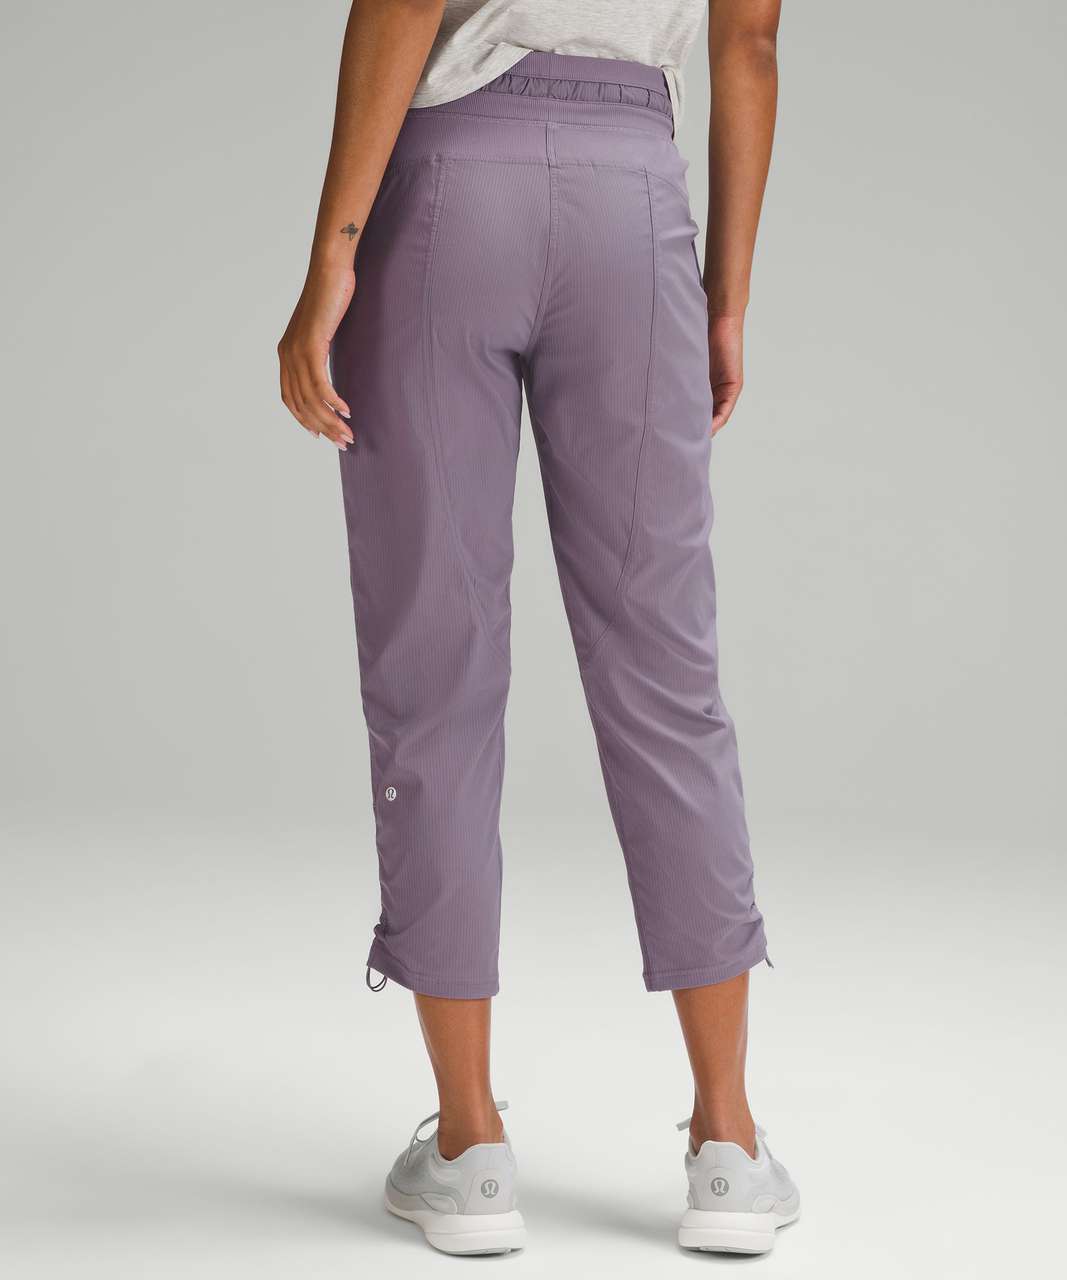 lululemon athletica Dance Studio Mid-rise Cropped Pants - Color Purple -  Size 0